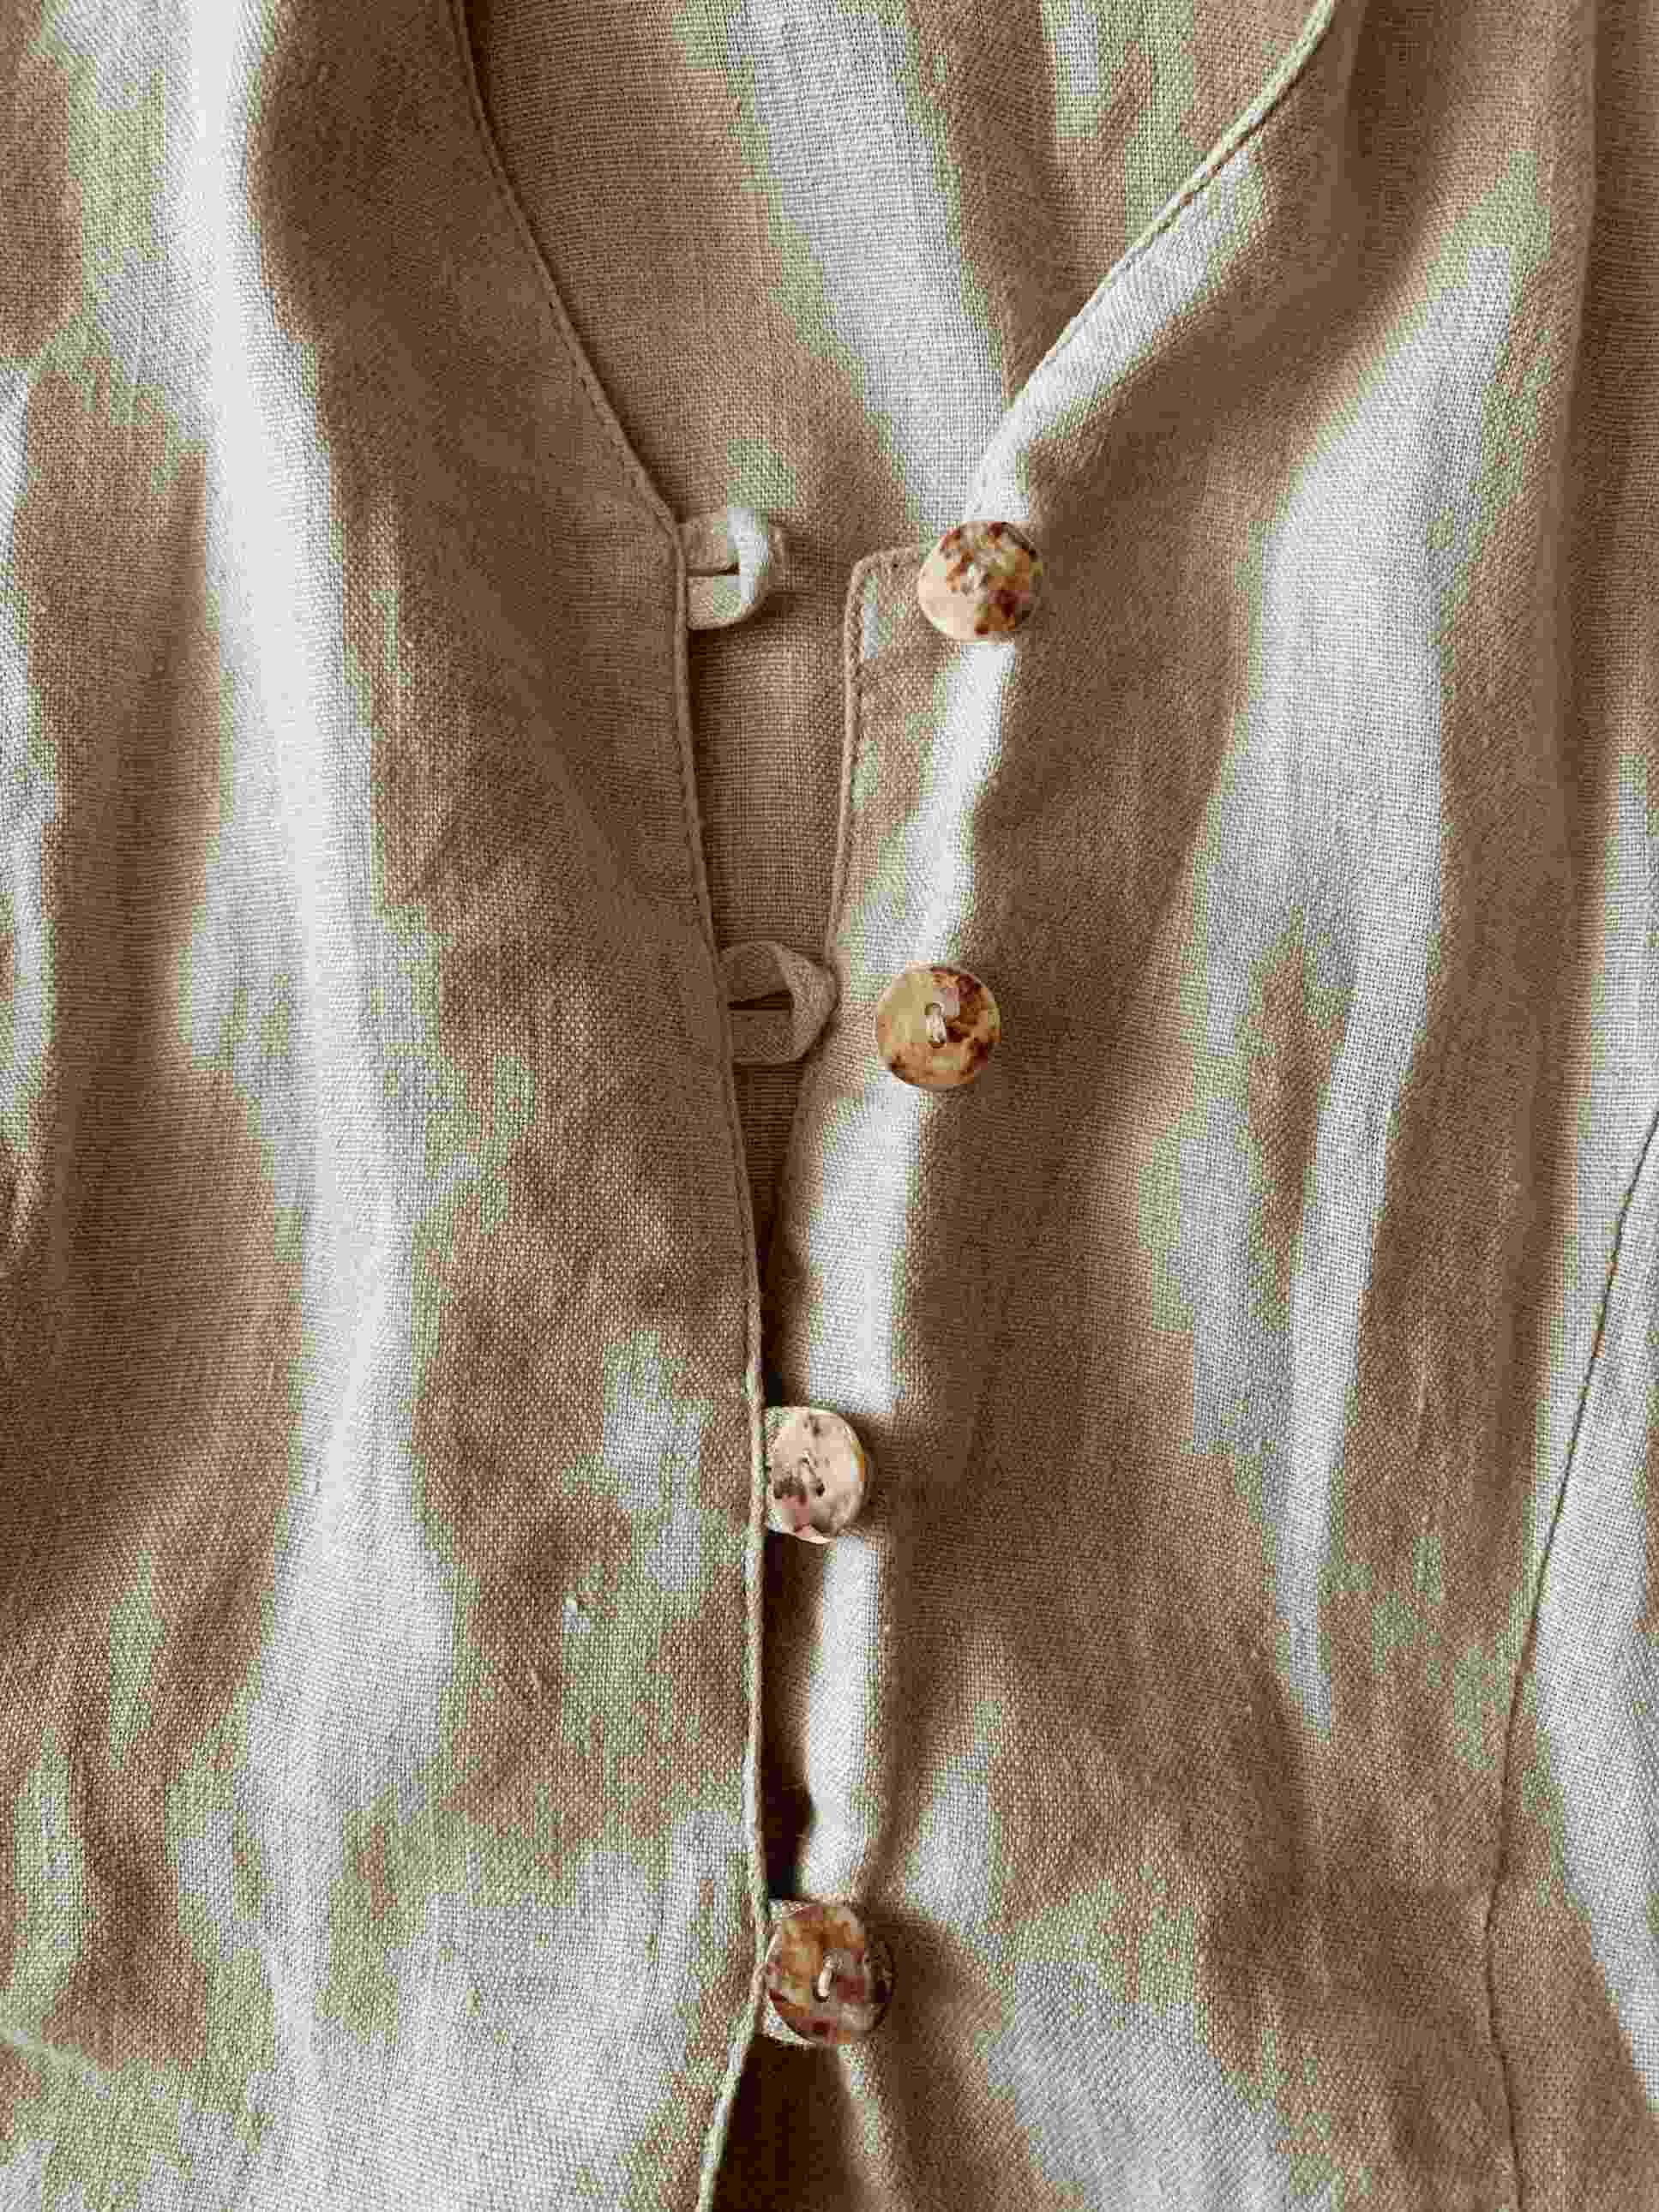 button up linen shirt close up